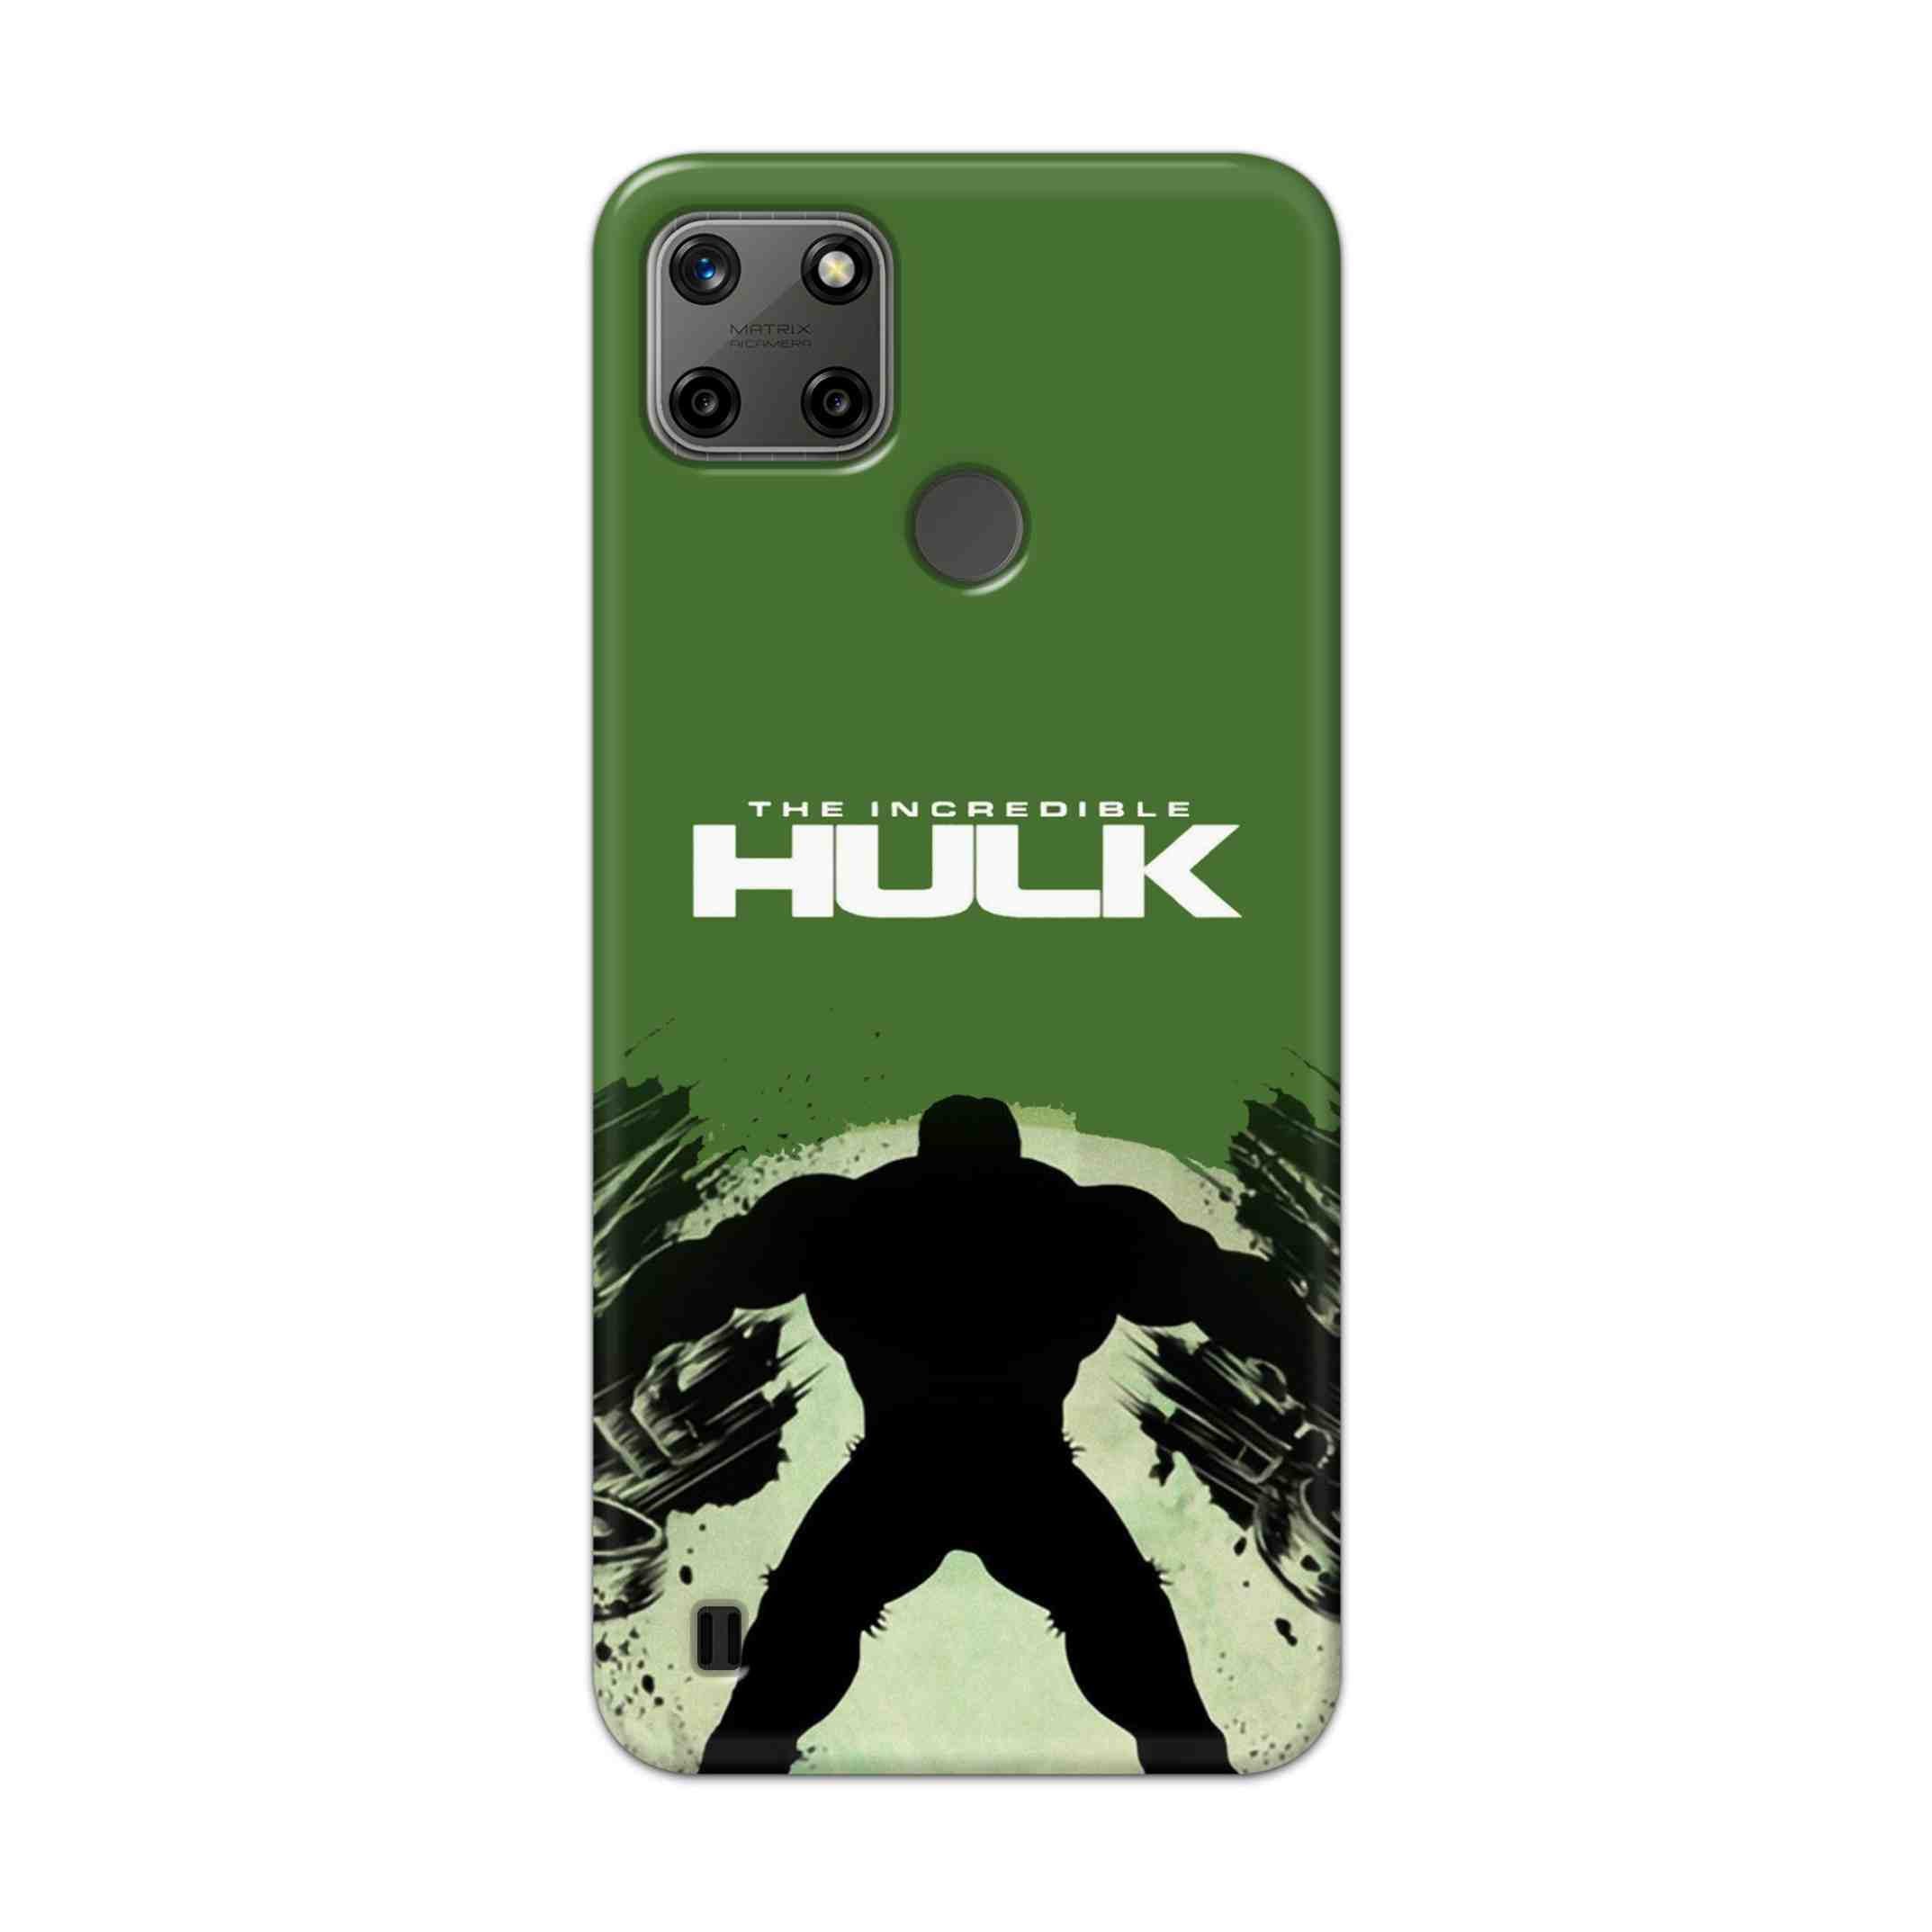 Buy Hulk Hard Back Mobile Phone Case Cover For Realme C25Y Online